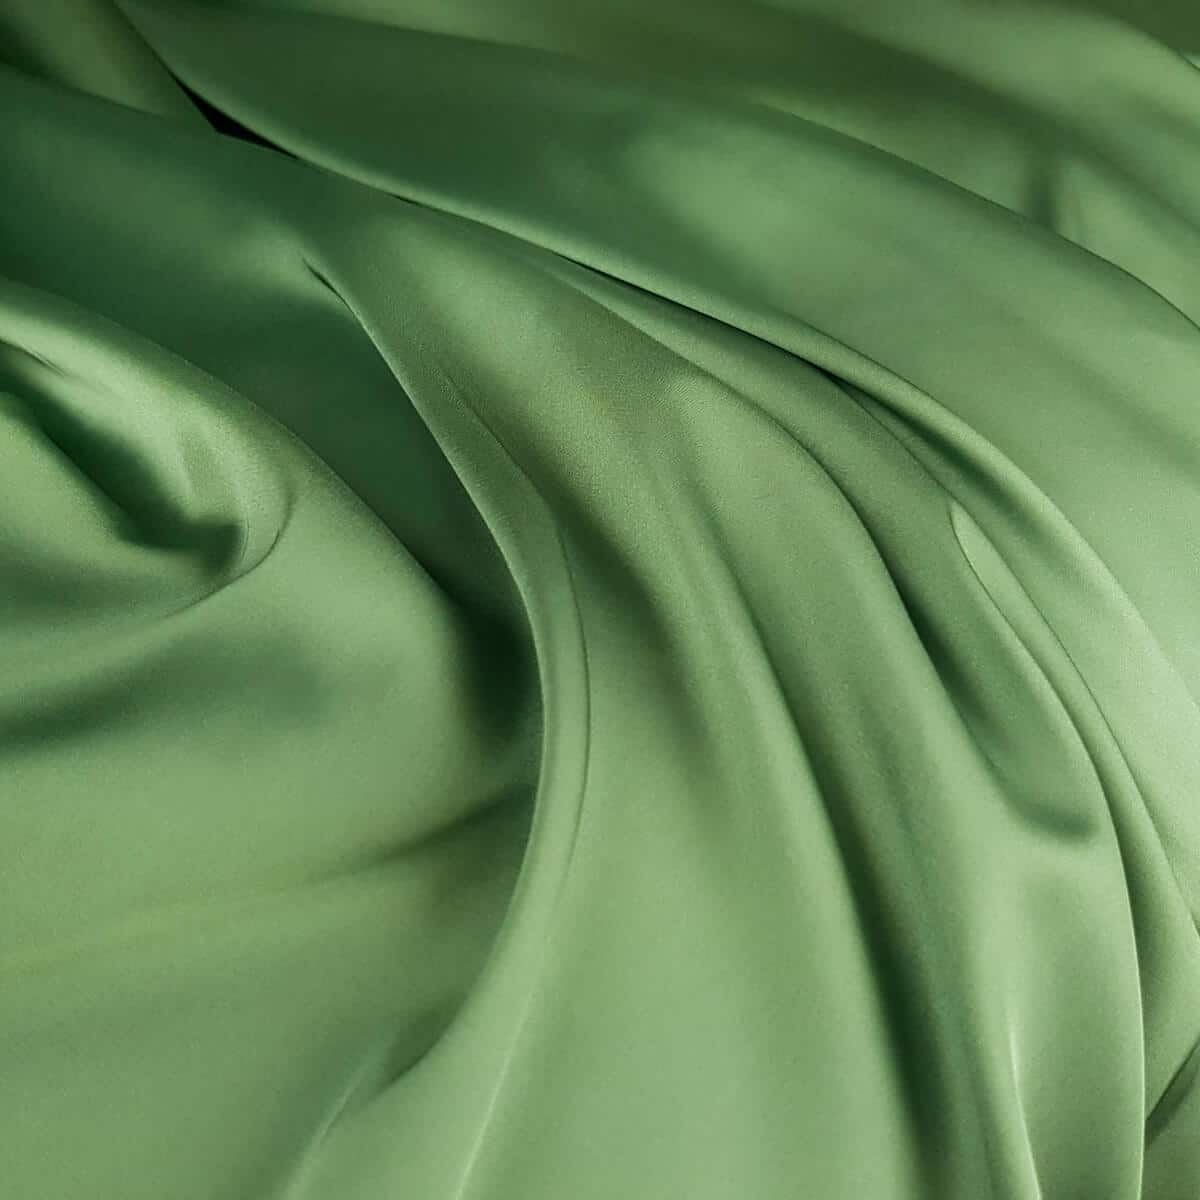 satyna trawiasta zielen elastyczna kryjaca poliesterC